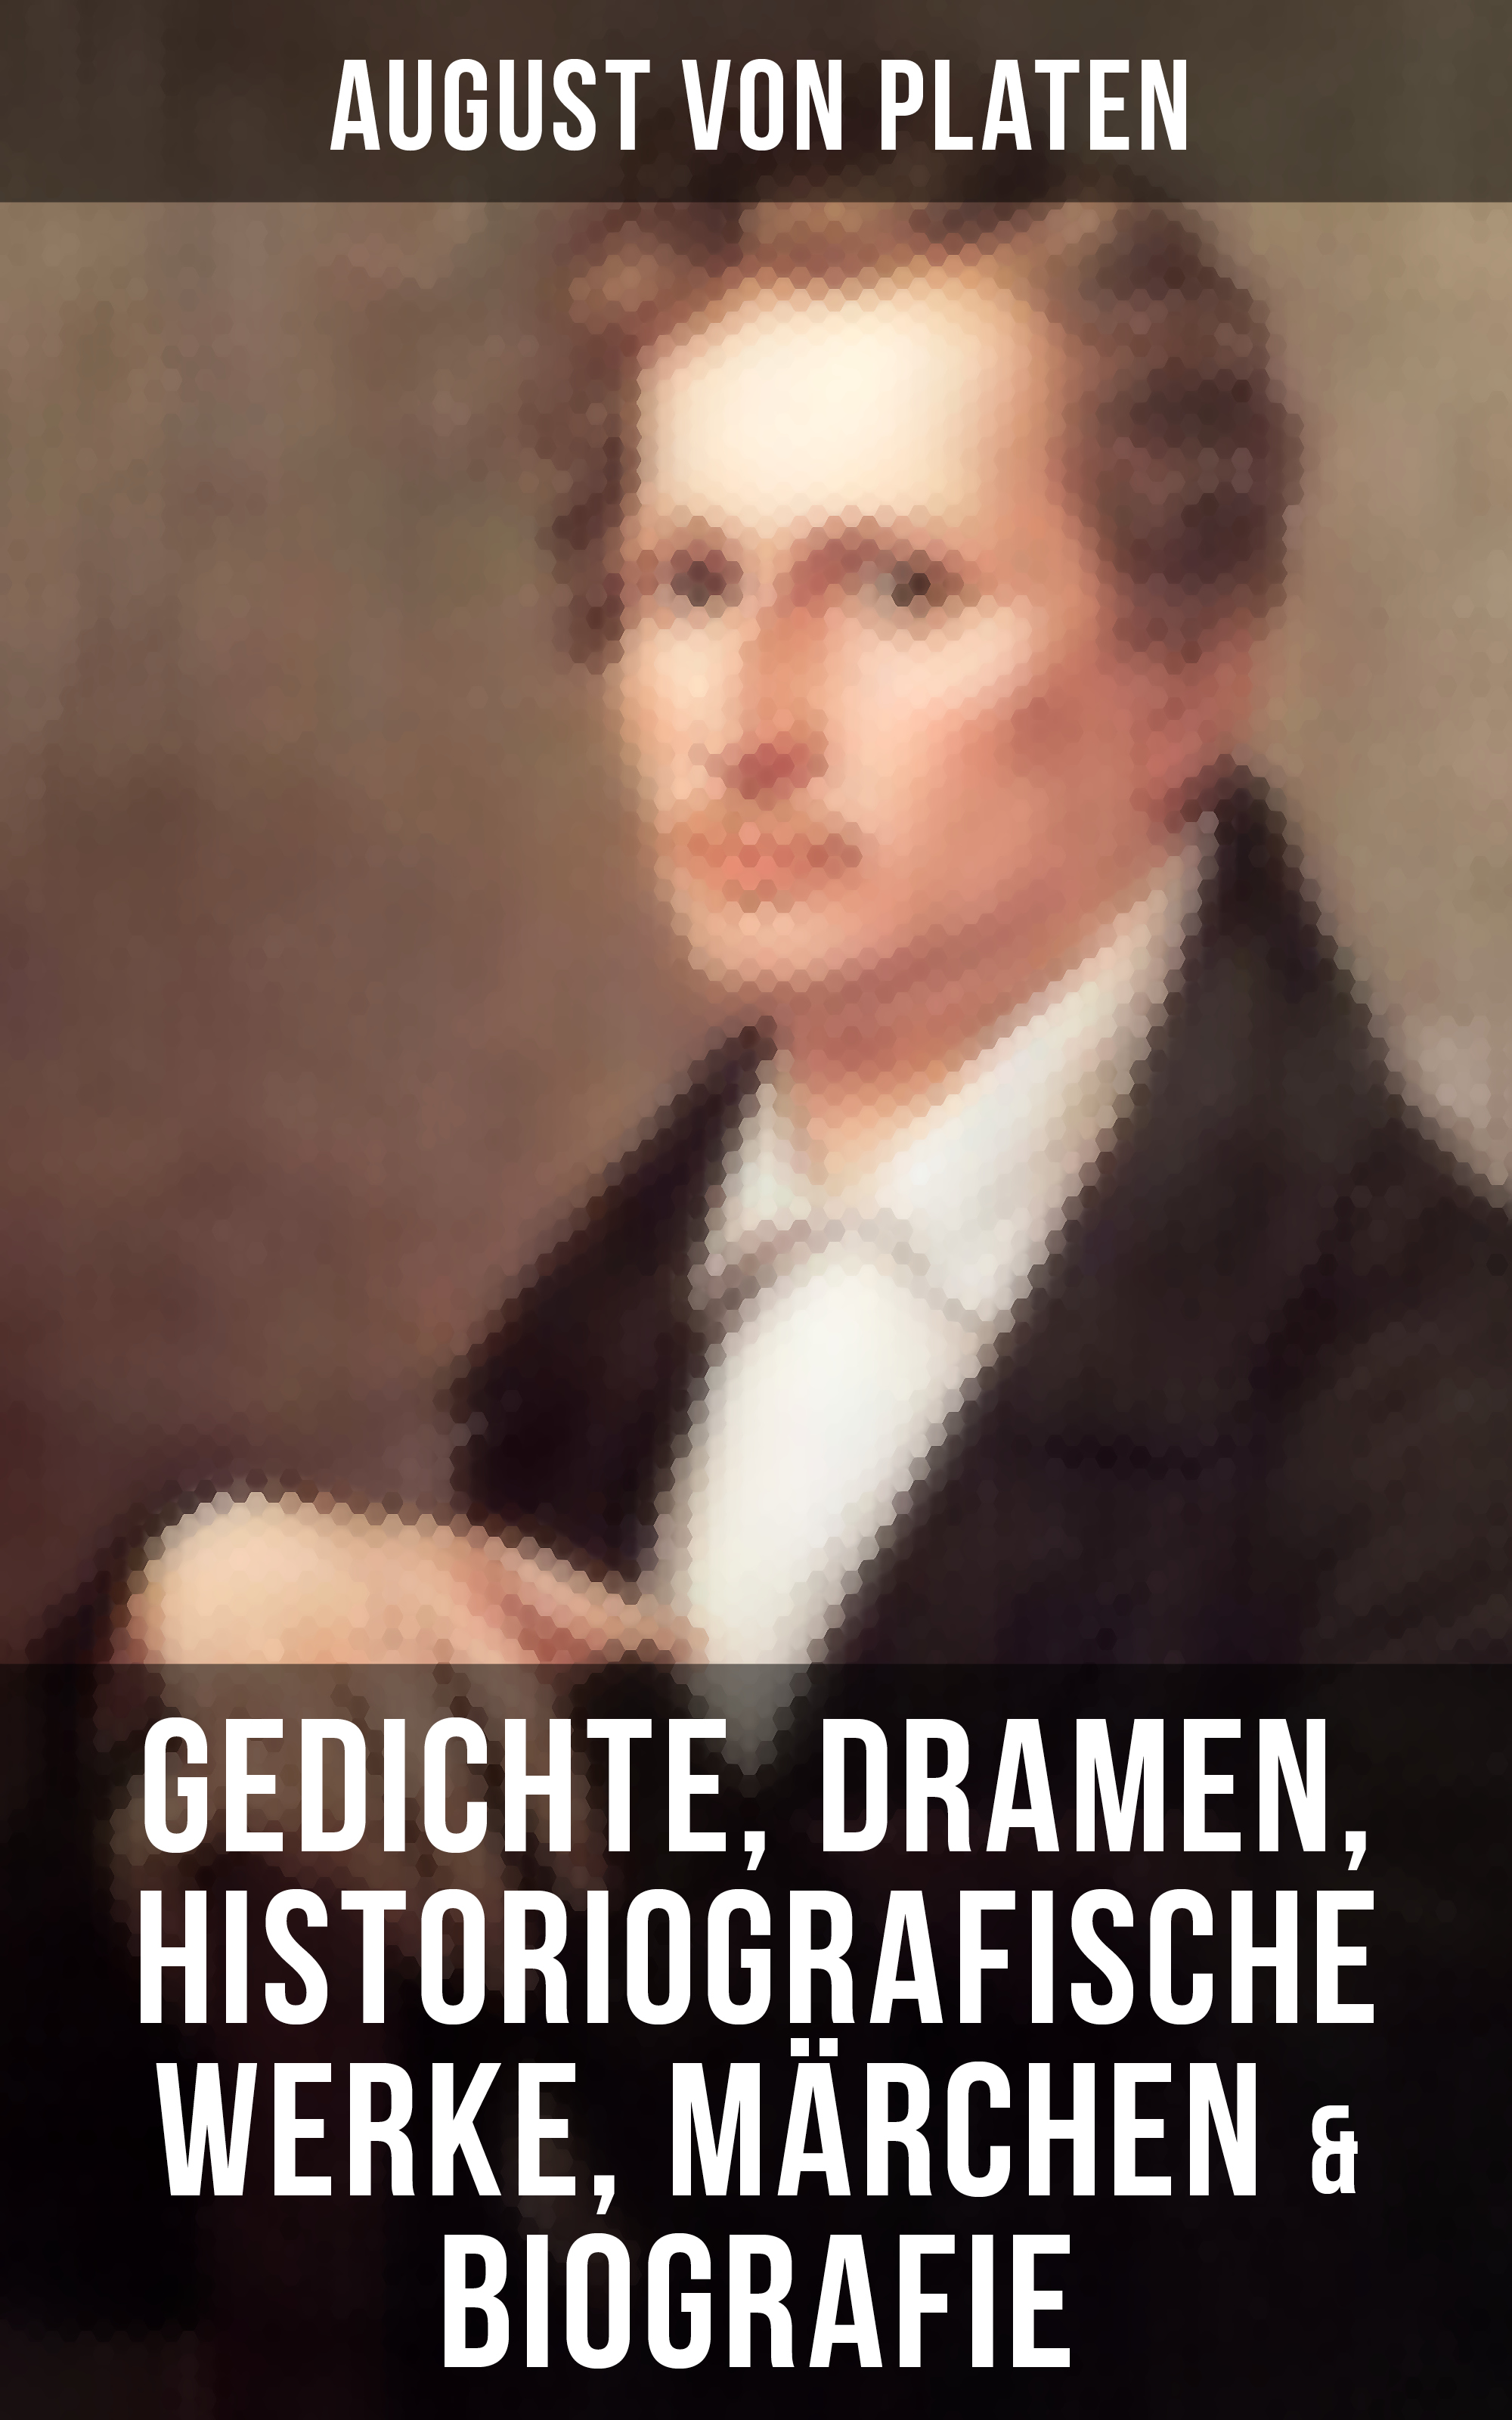 August von Platen August von Platen: Gedichte, Dramen, Historiografische Werke, Märchen & Biografie